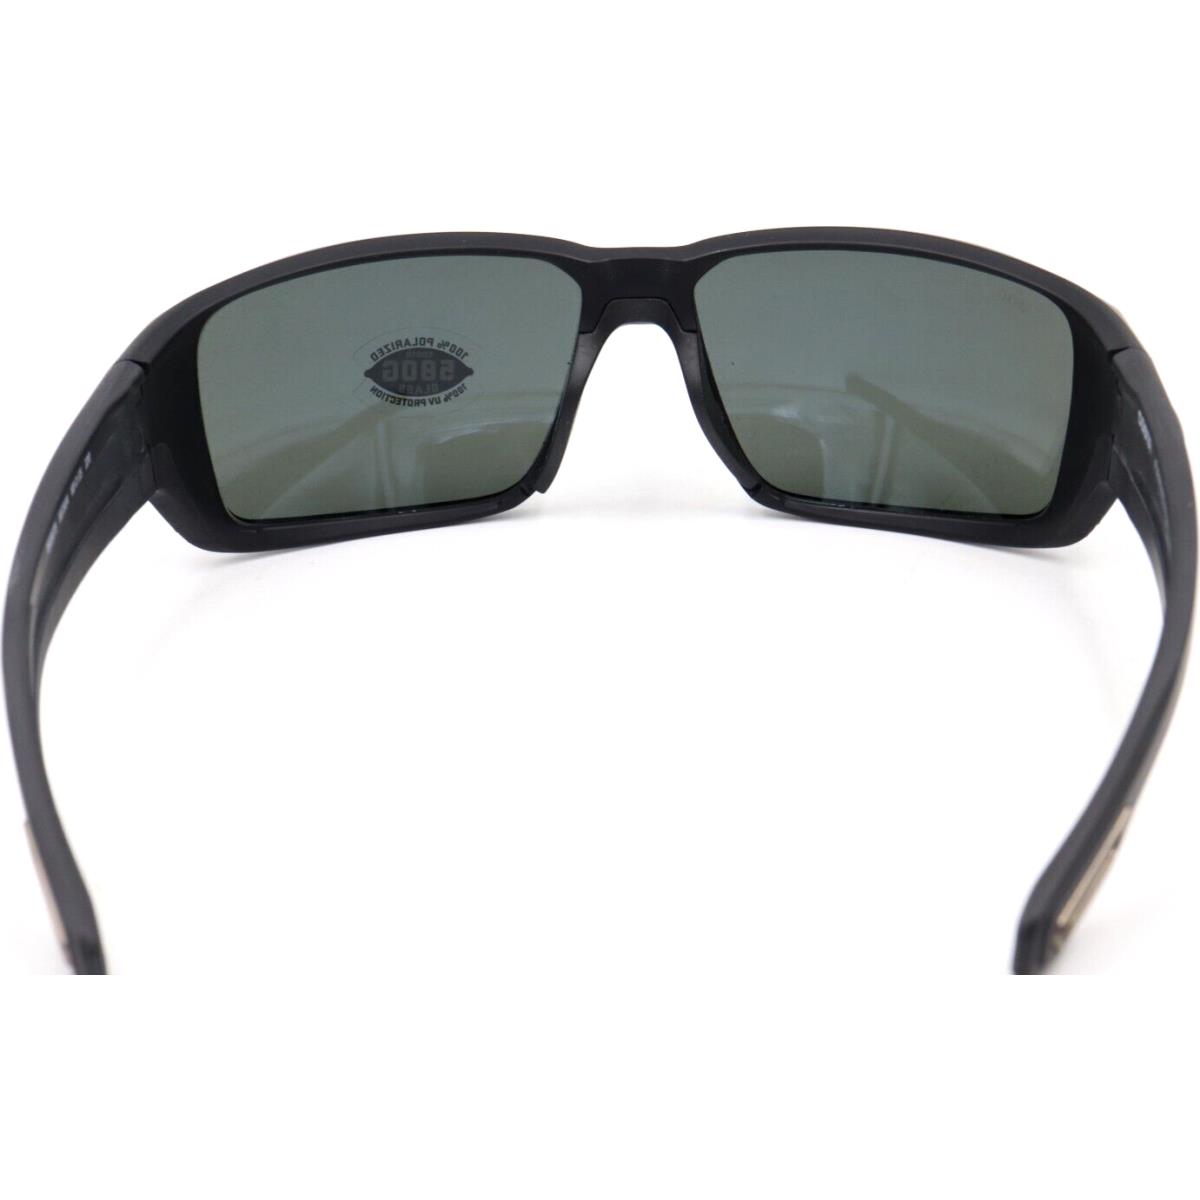 Costa Del Mar sunglasses  - 11 matte black Frame, Gray / silver Lens 1